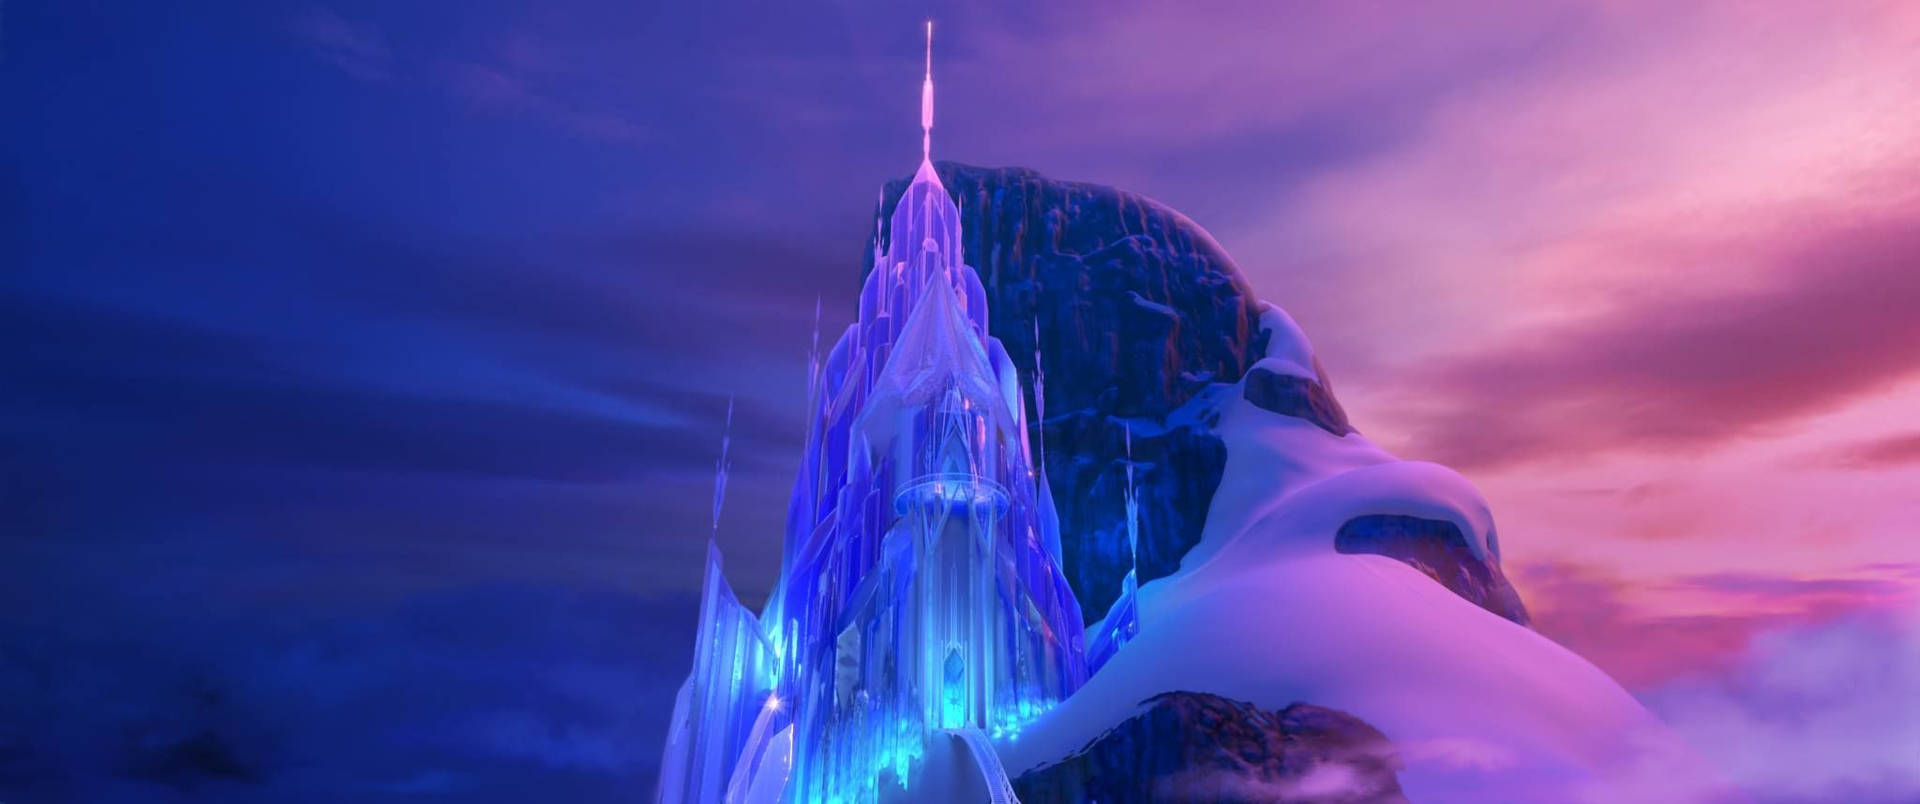 Frozen Castle On Cliff